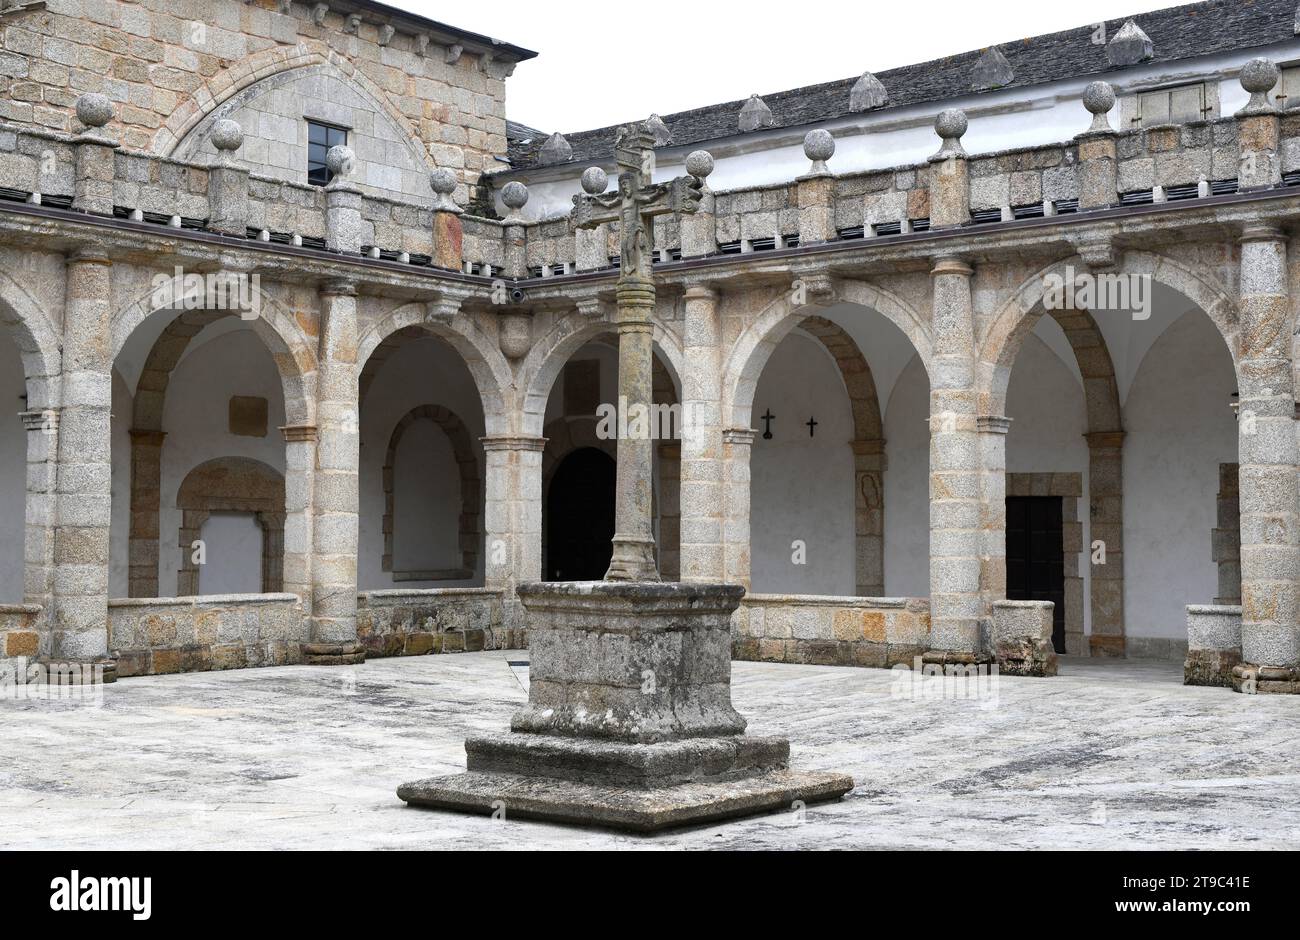 Cathédrale de Mondonedo, romane, gothique et baroque. Cloître 17e siècle. Lugo, Galice, Espagne. Banque D'Images